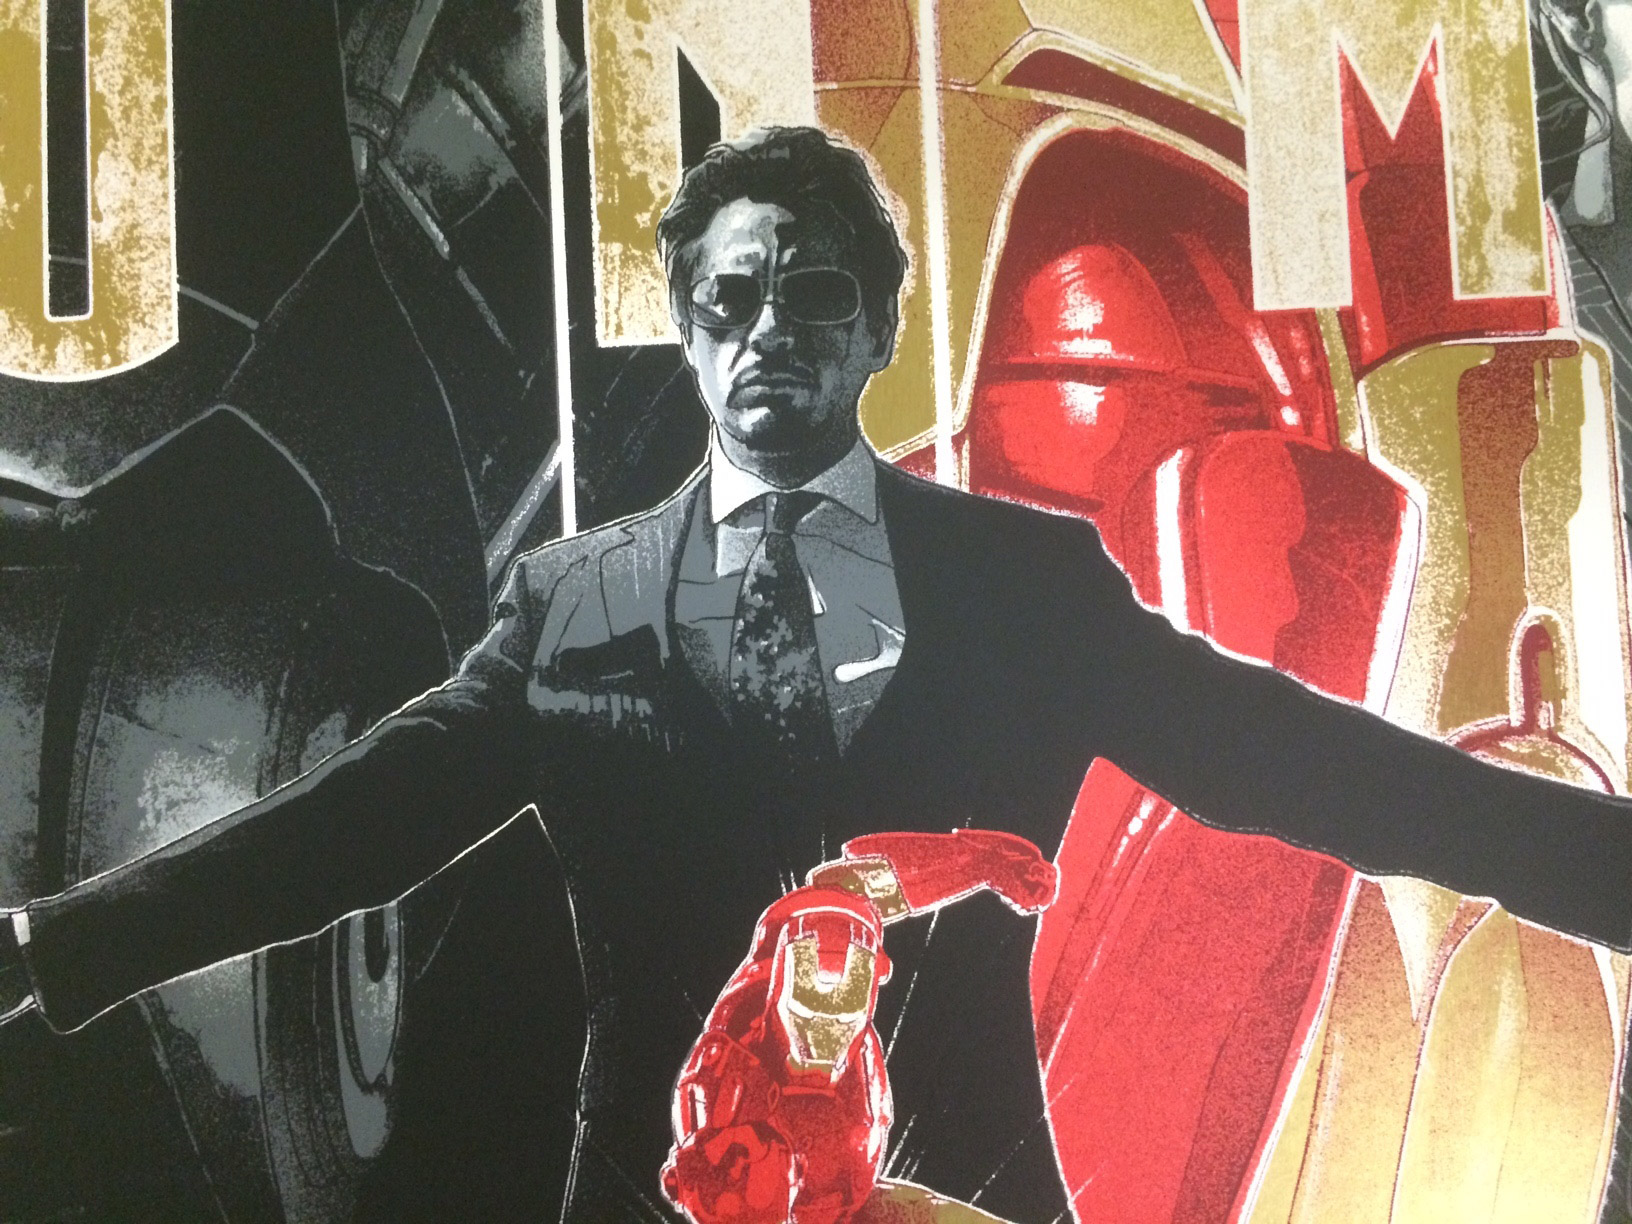 Iron Man Poster Detail 2